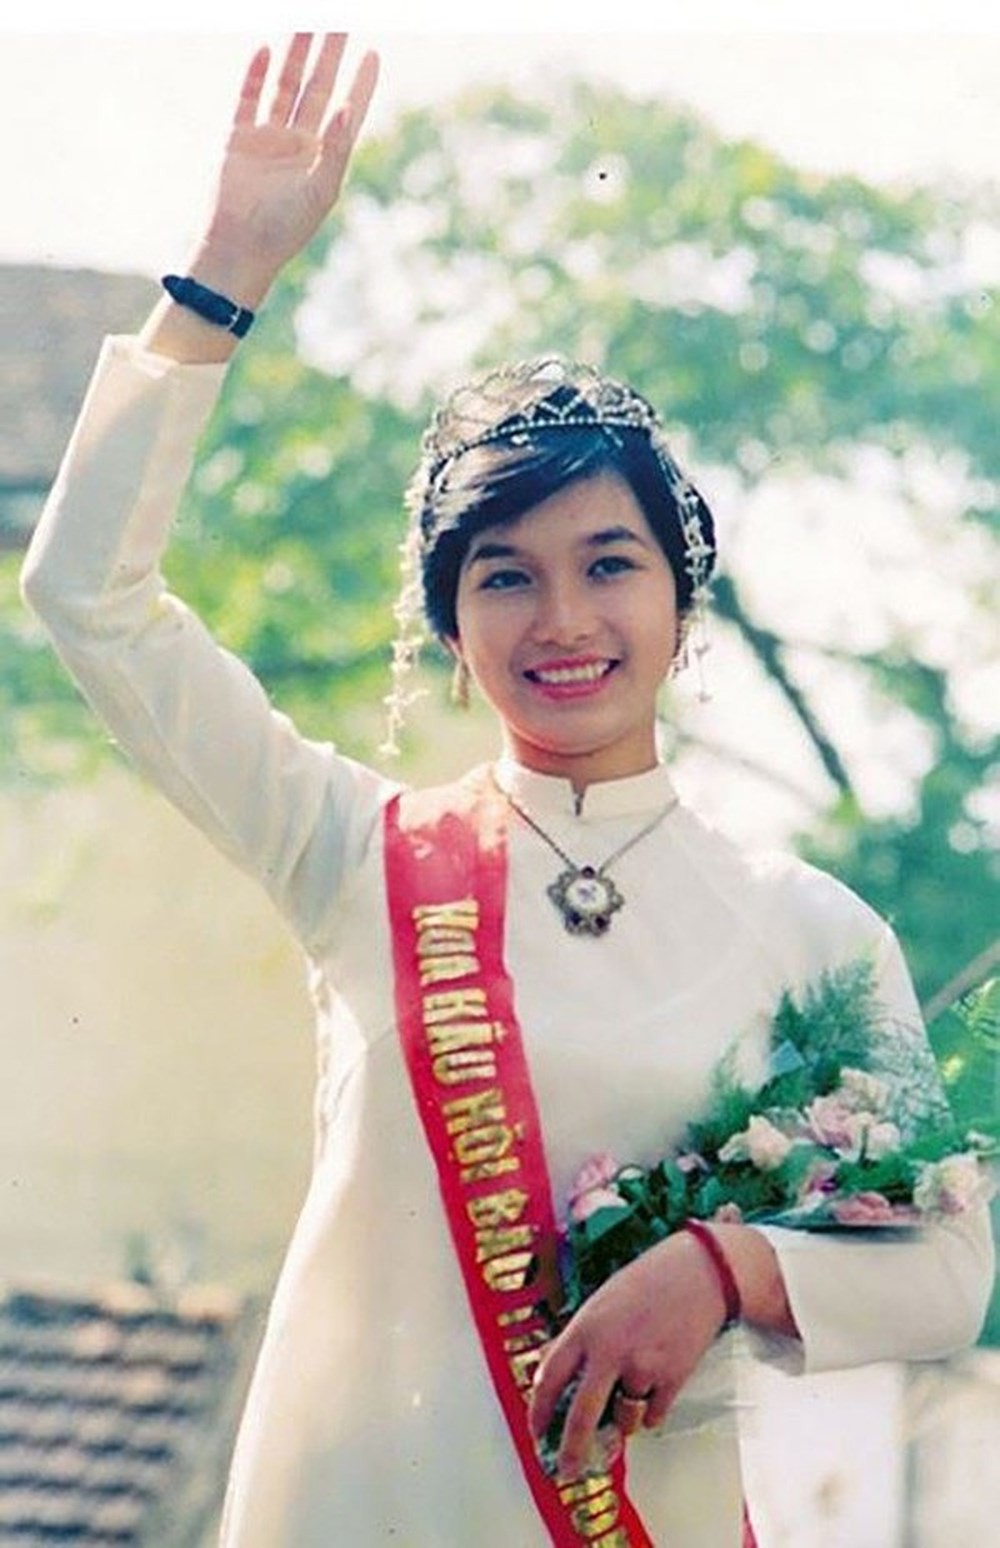 Loạt Hoa hậu Việt Nam sở hữu vẻ đẹp “bất biến”: Người có gương mặt trẻ trung hệt ngày đăng quang, người mệnh danh thần tiên tỷ tỷ - Ảnh 1.